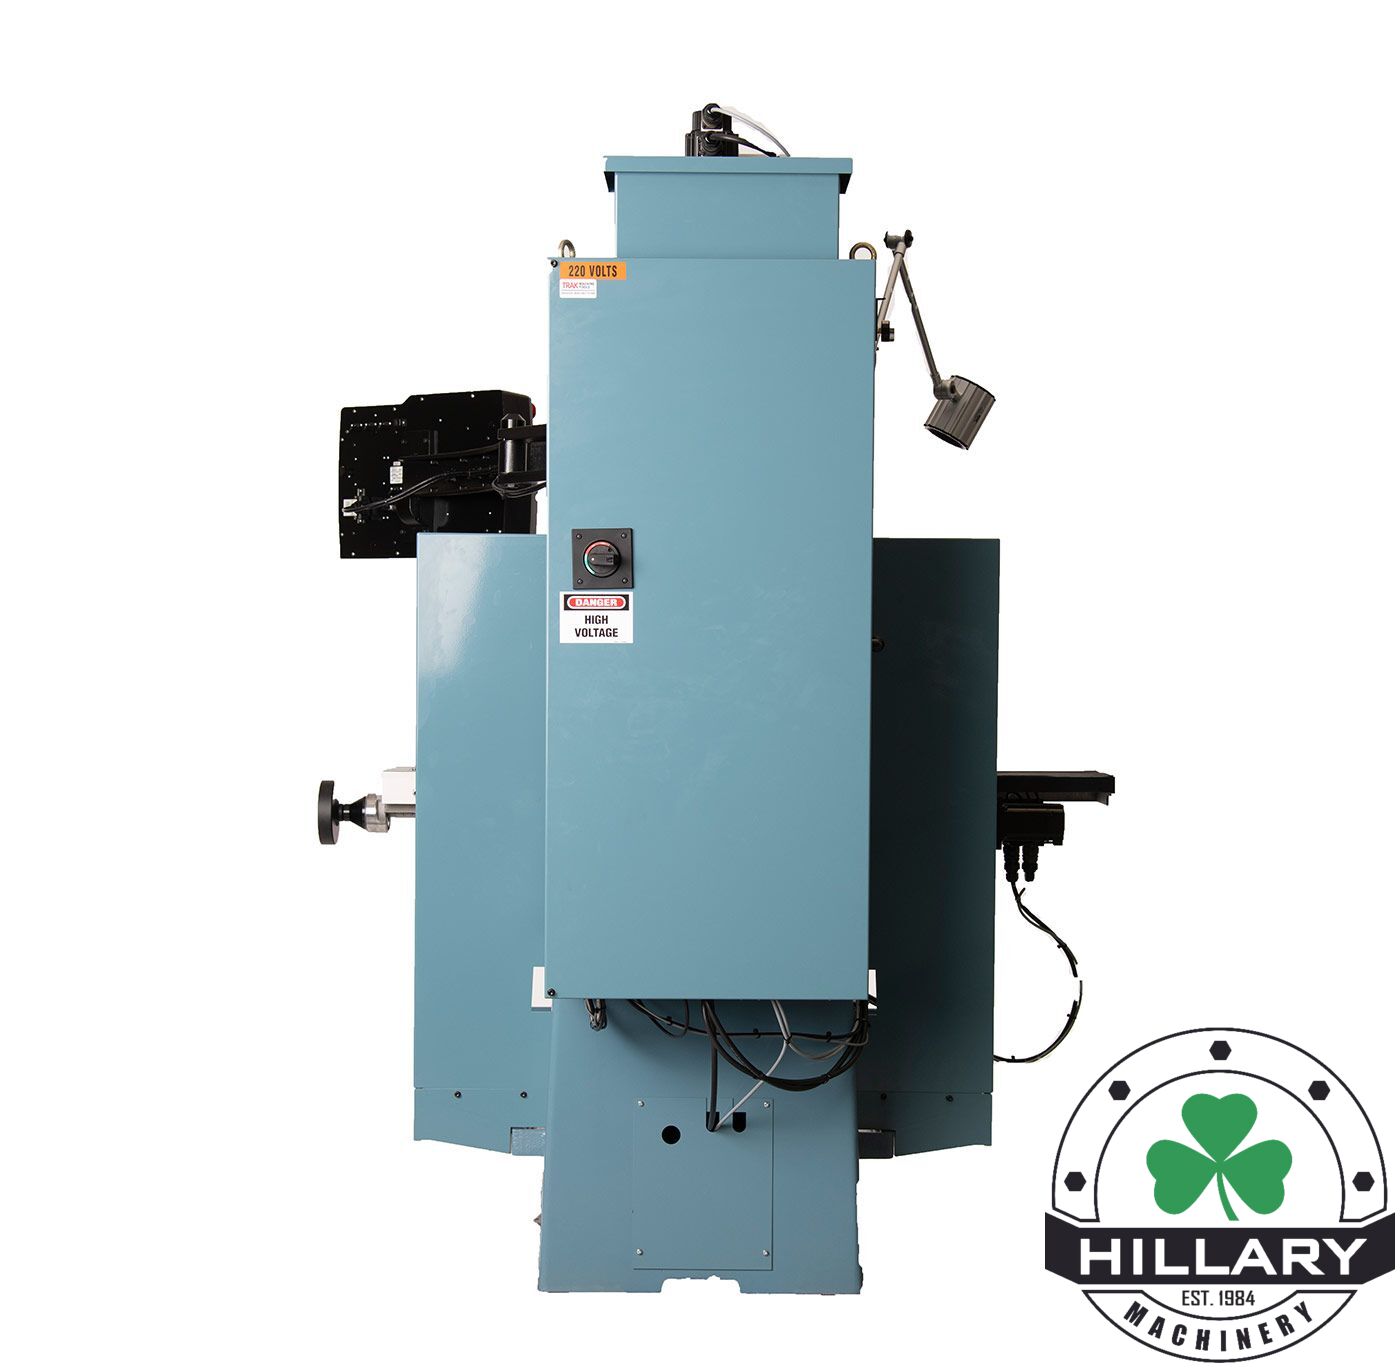 TRAK MACHINE TOOLS TRAK DPM RX3 Tool Room Mills | Hillary Machinery